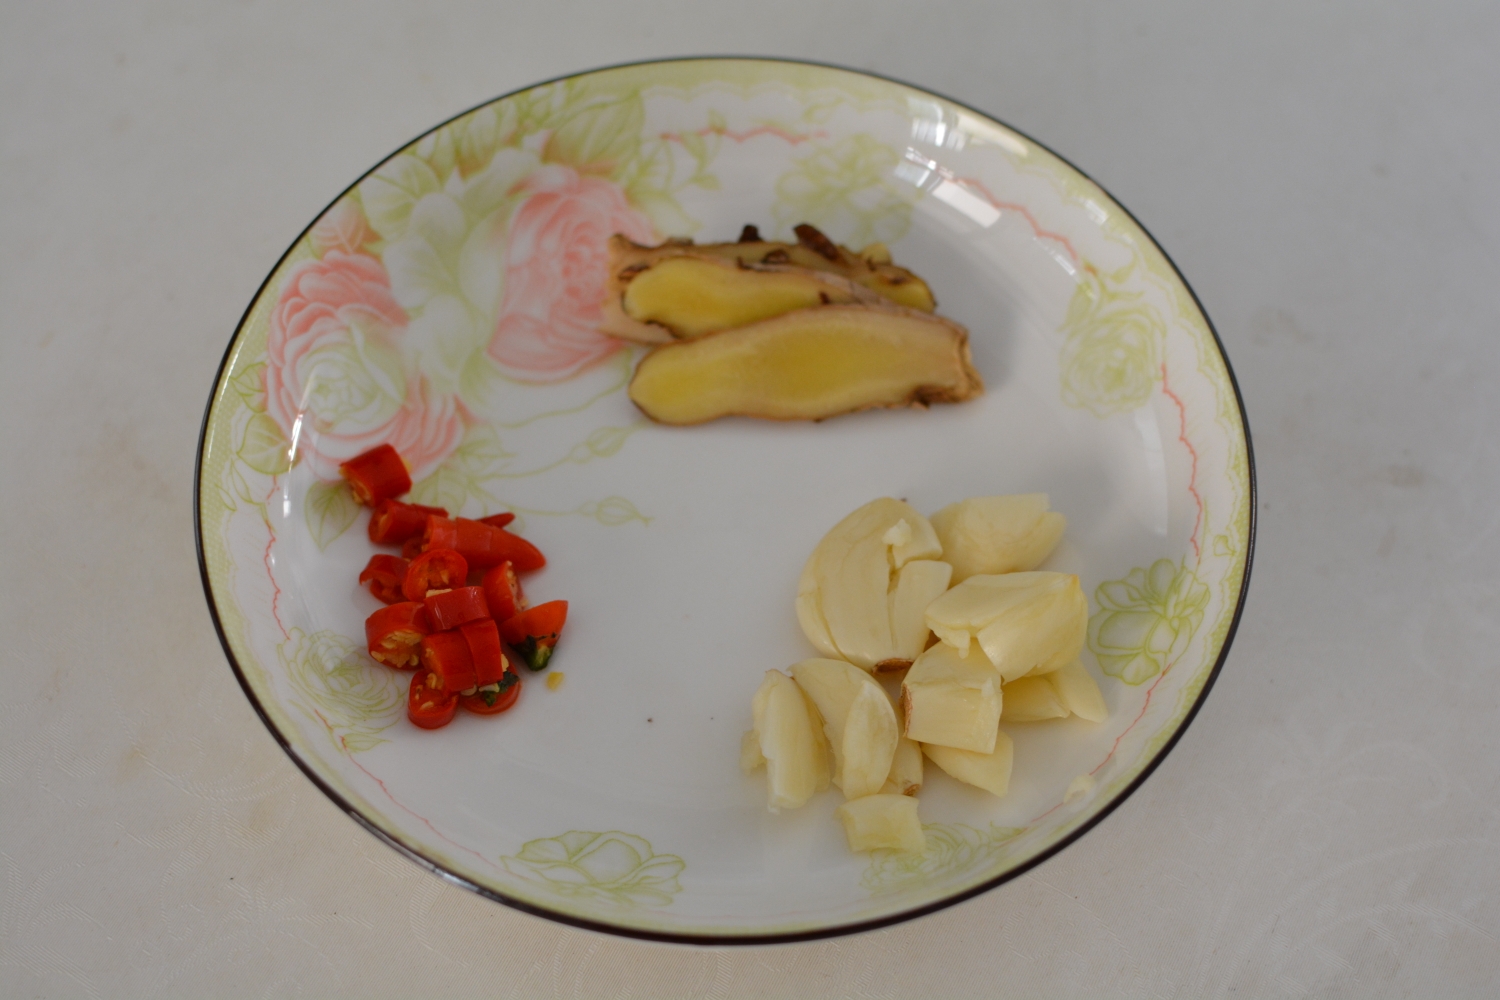 冬瓜比肉好吃—冬瓜焖肉的做法 步骤5